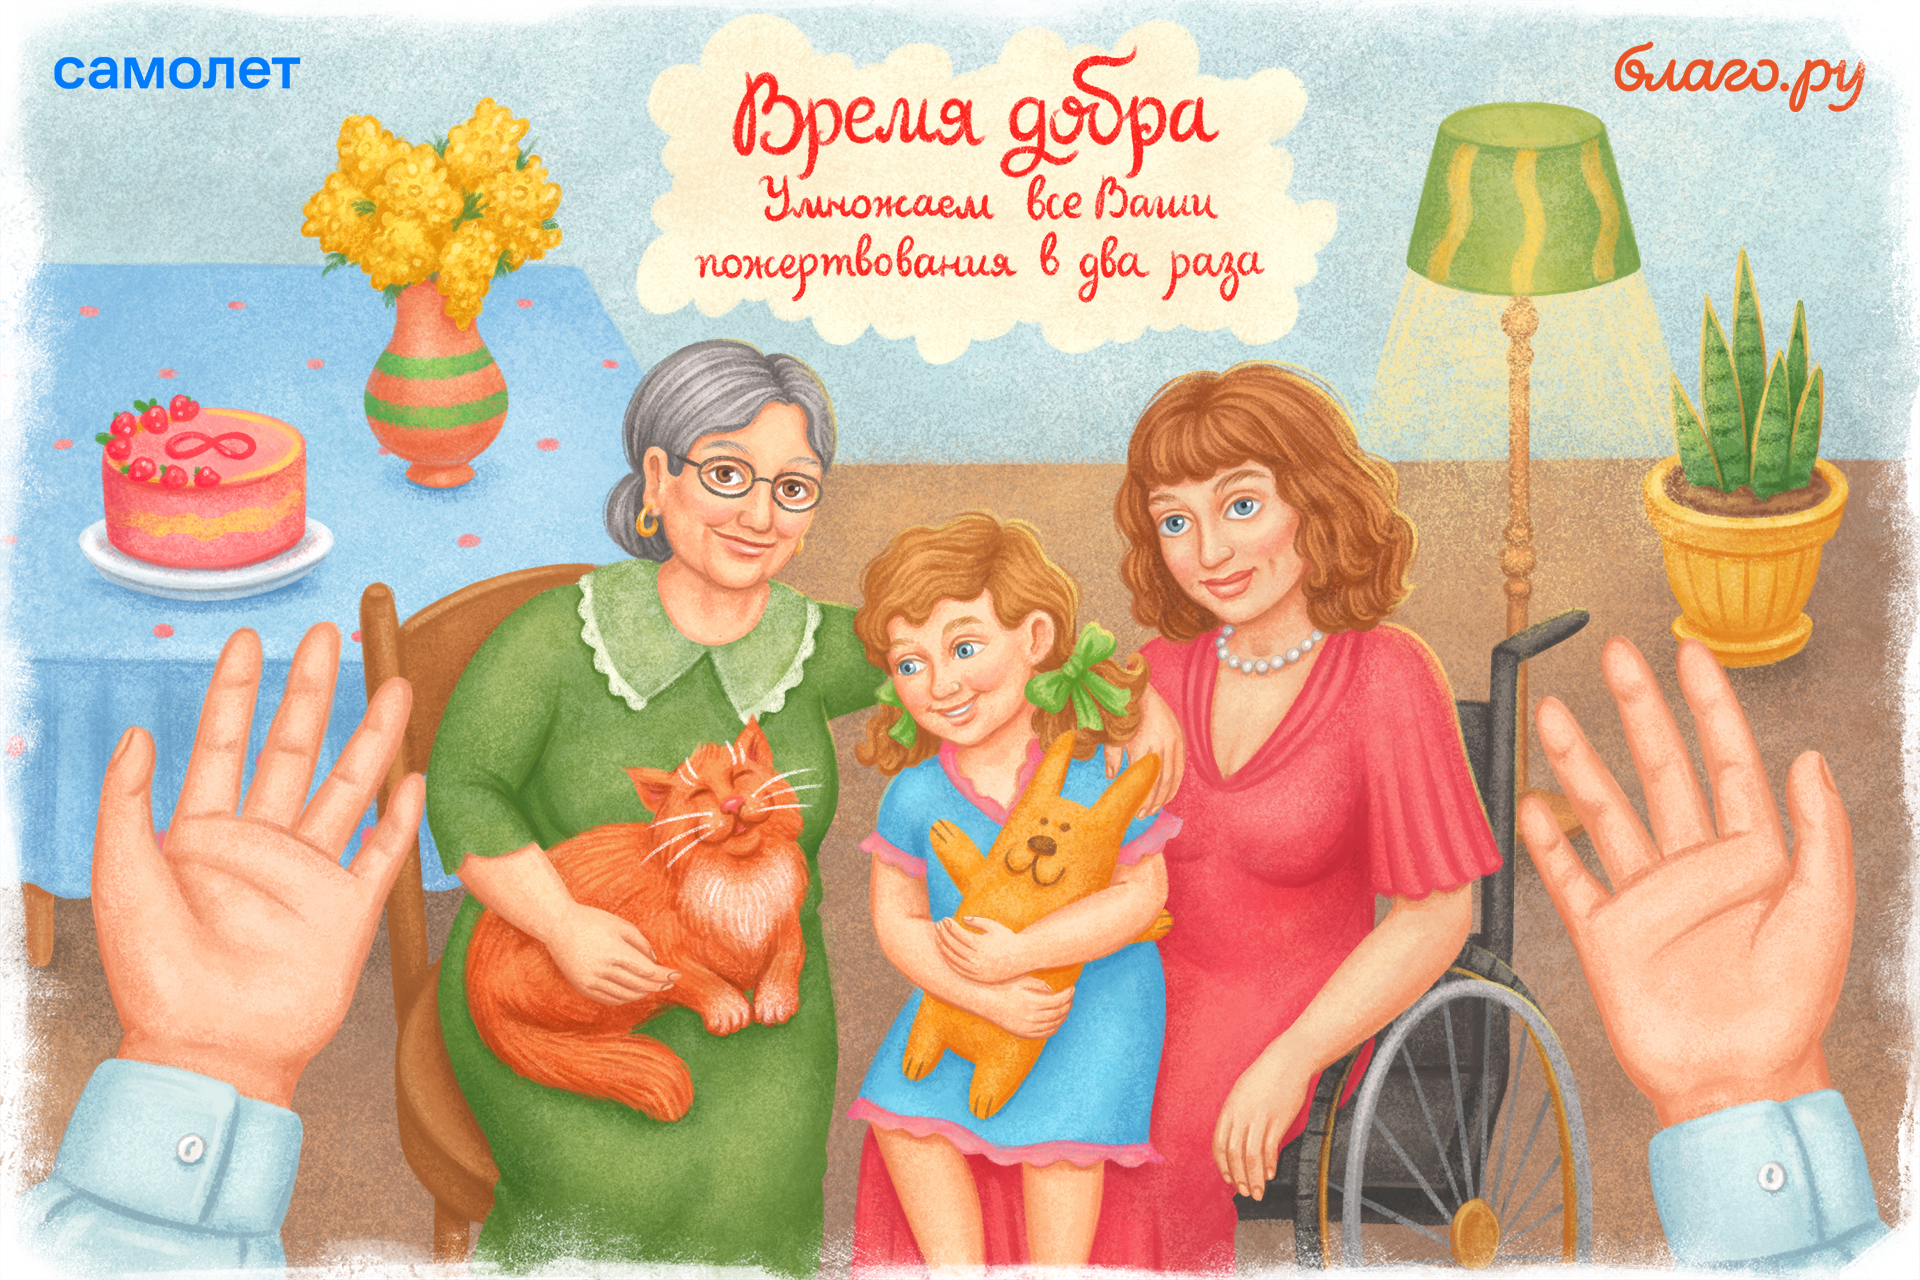 Вы сейчас просматриваете Время добра: 1 марта на Благо.ру все пожертвования в пользу фондов, помогающих женщинам, будут удвоены